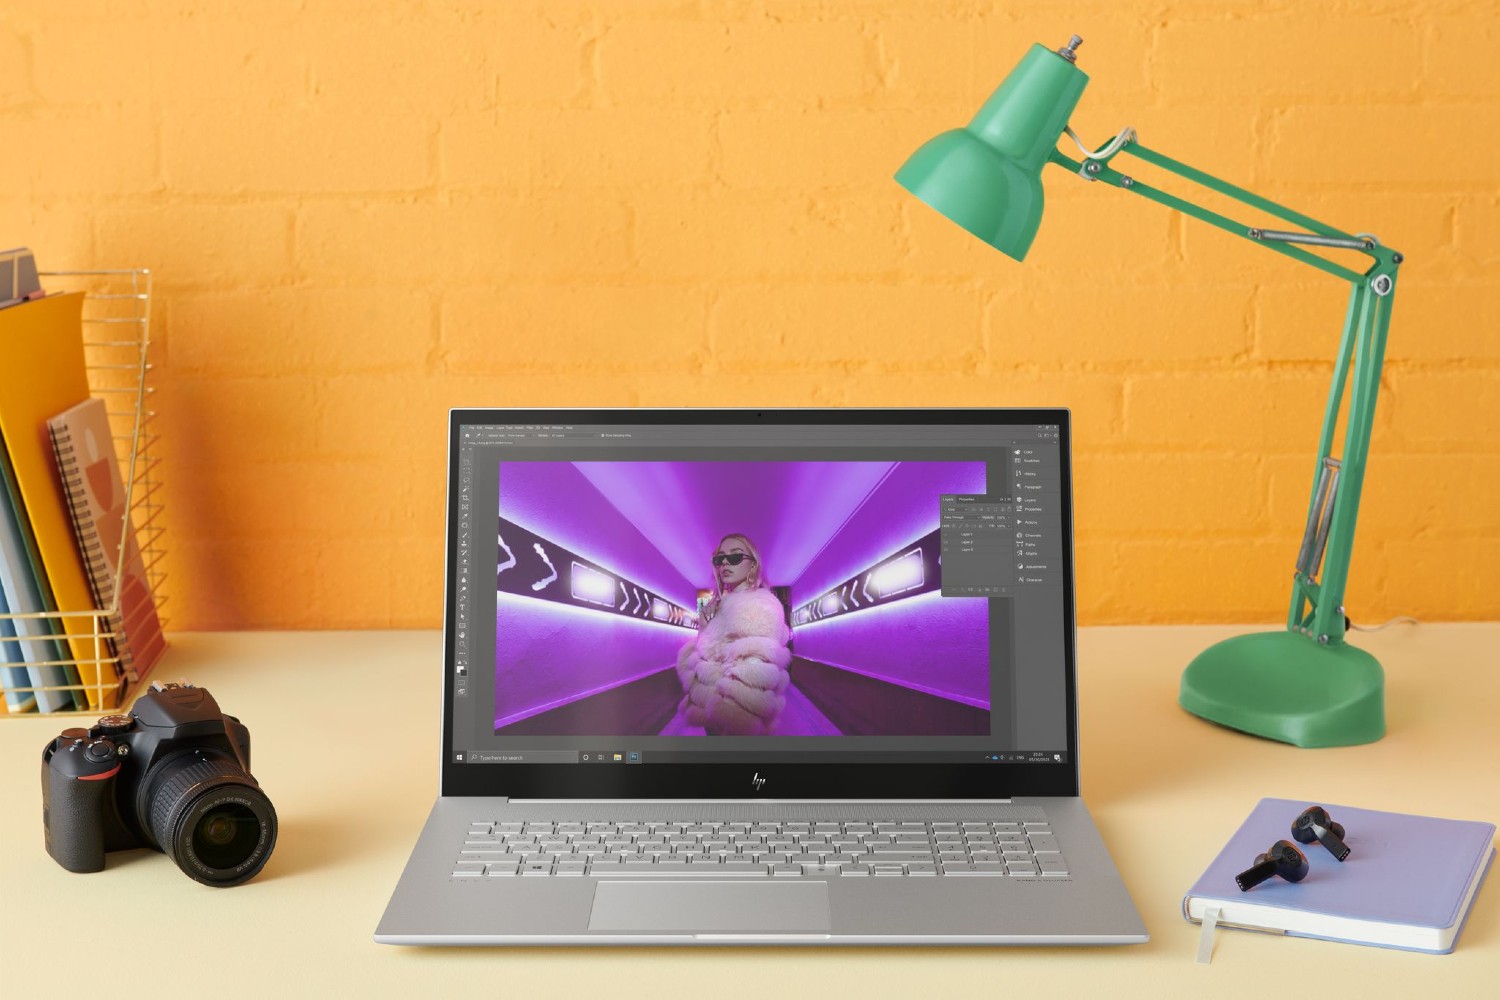 HP Envy 17-इंच का लैपटॉप एक कार्यालय डेस्क पर रखा हुआ है।